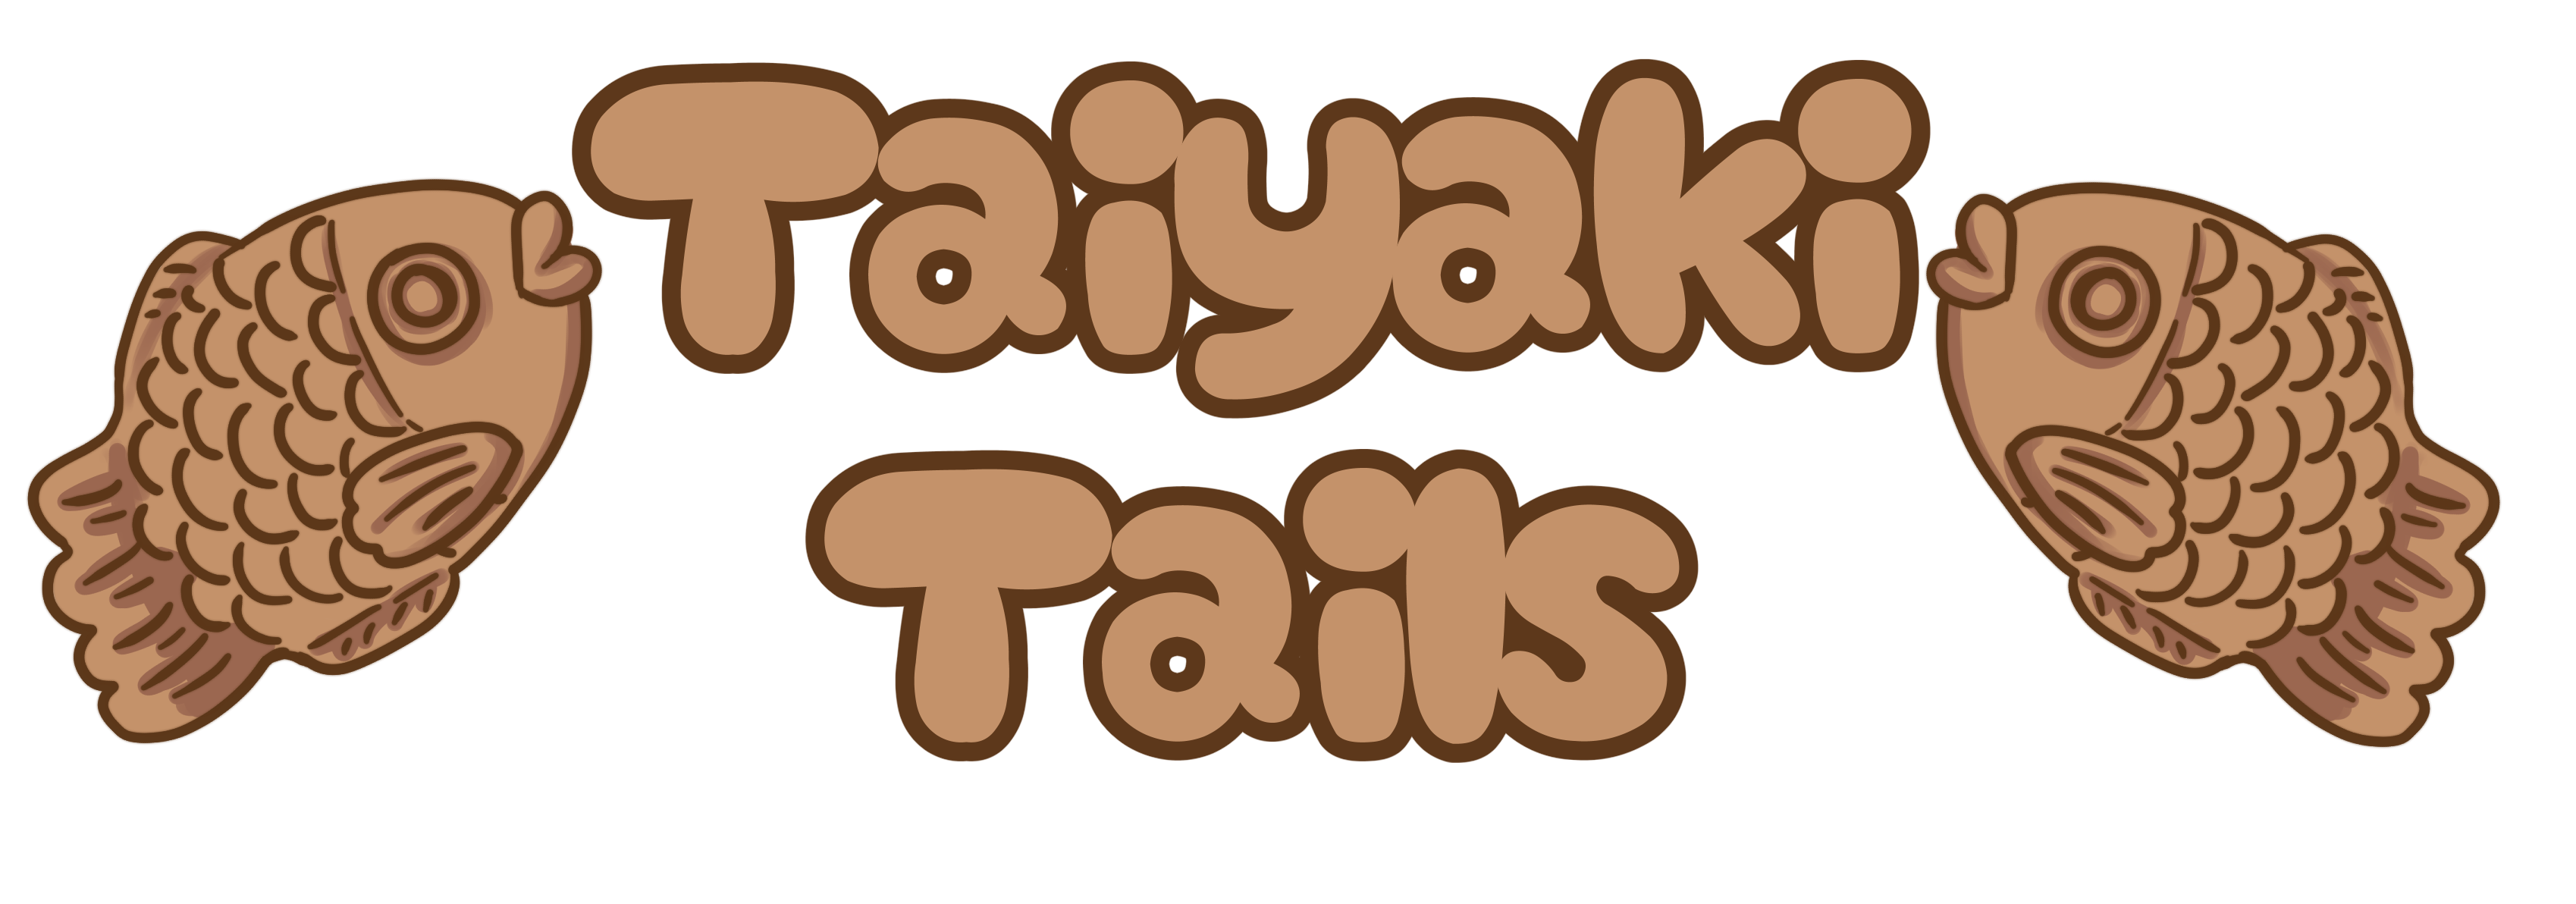 TaiyakiTails